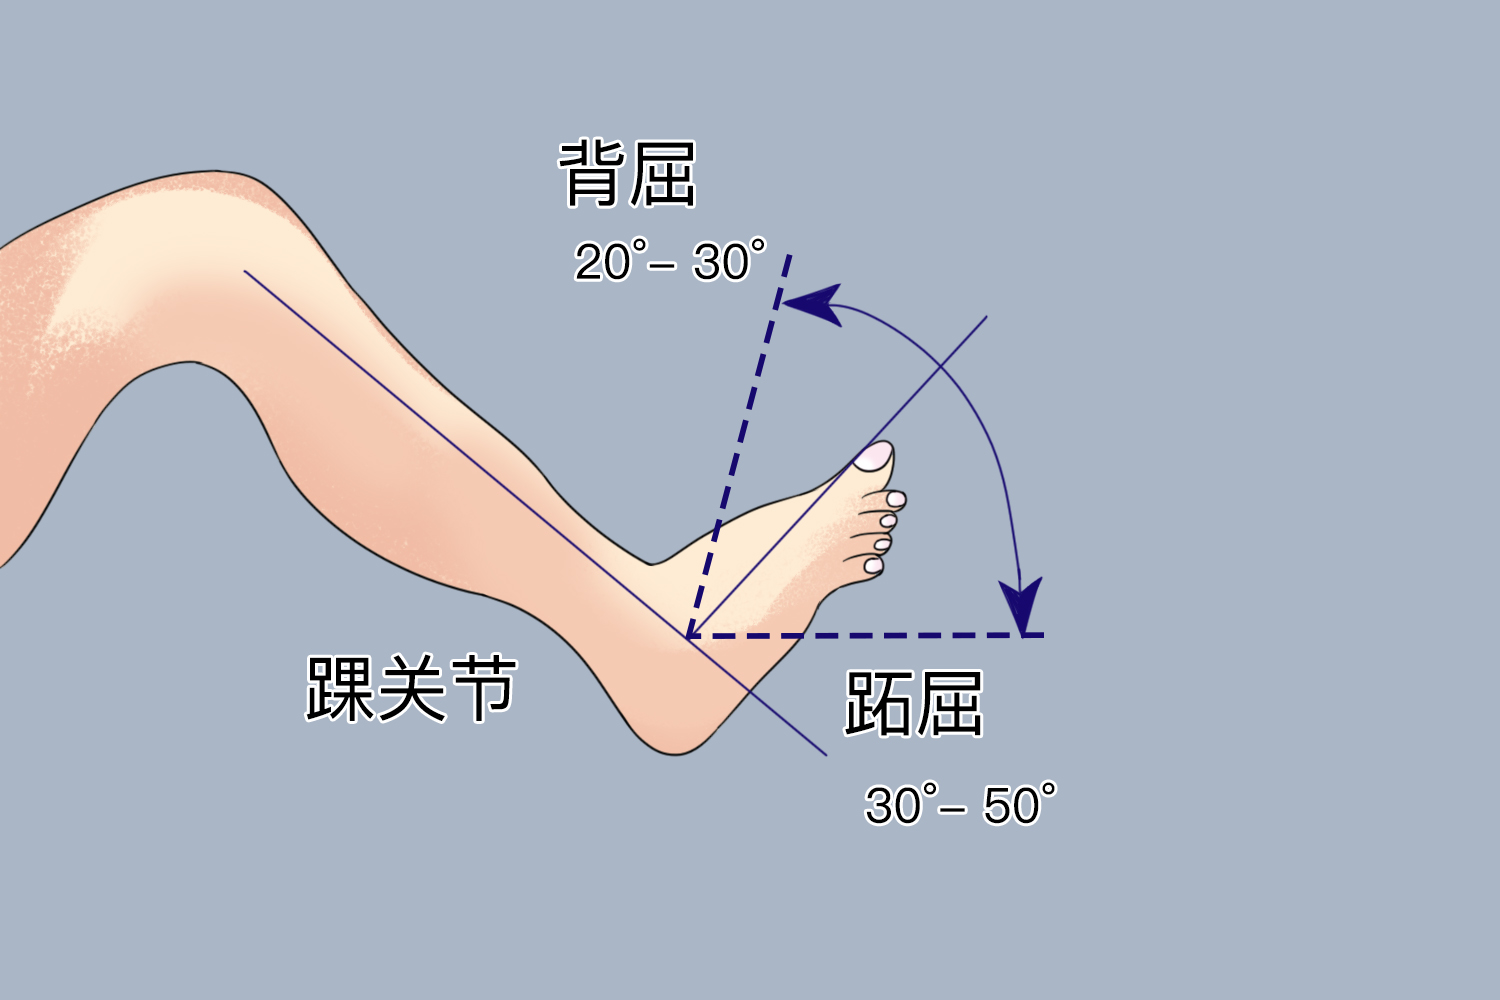 踝关节跖屈与背屈角度图